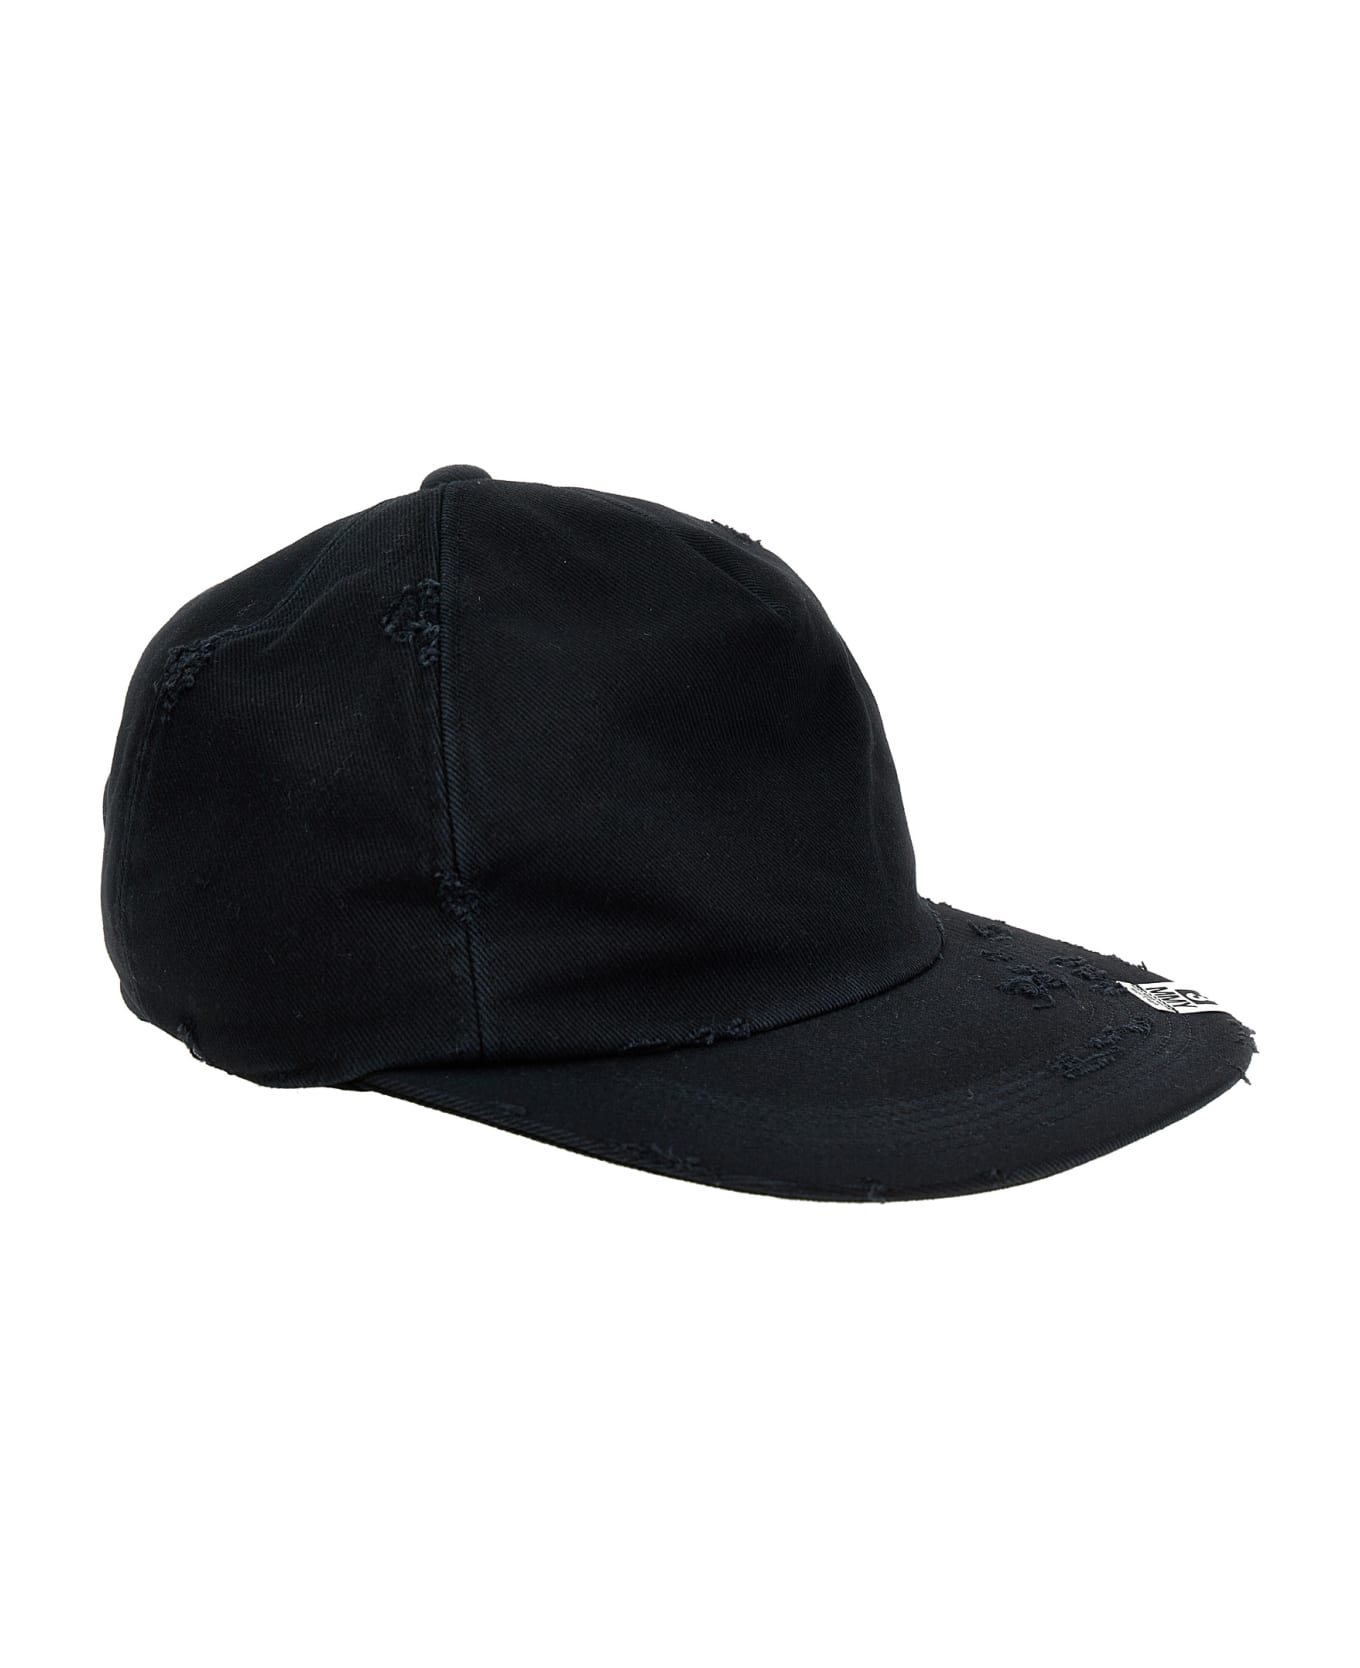 Mihara Yasuhiro Used Effect Cap - Black   帽子